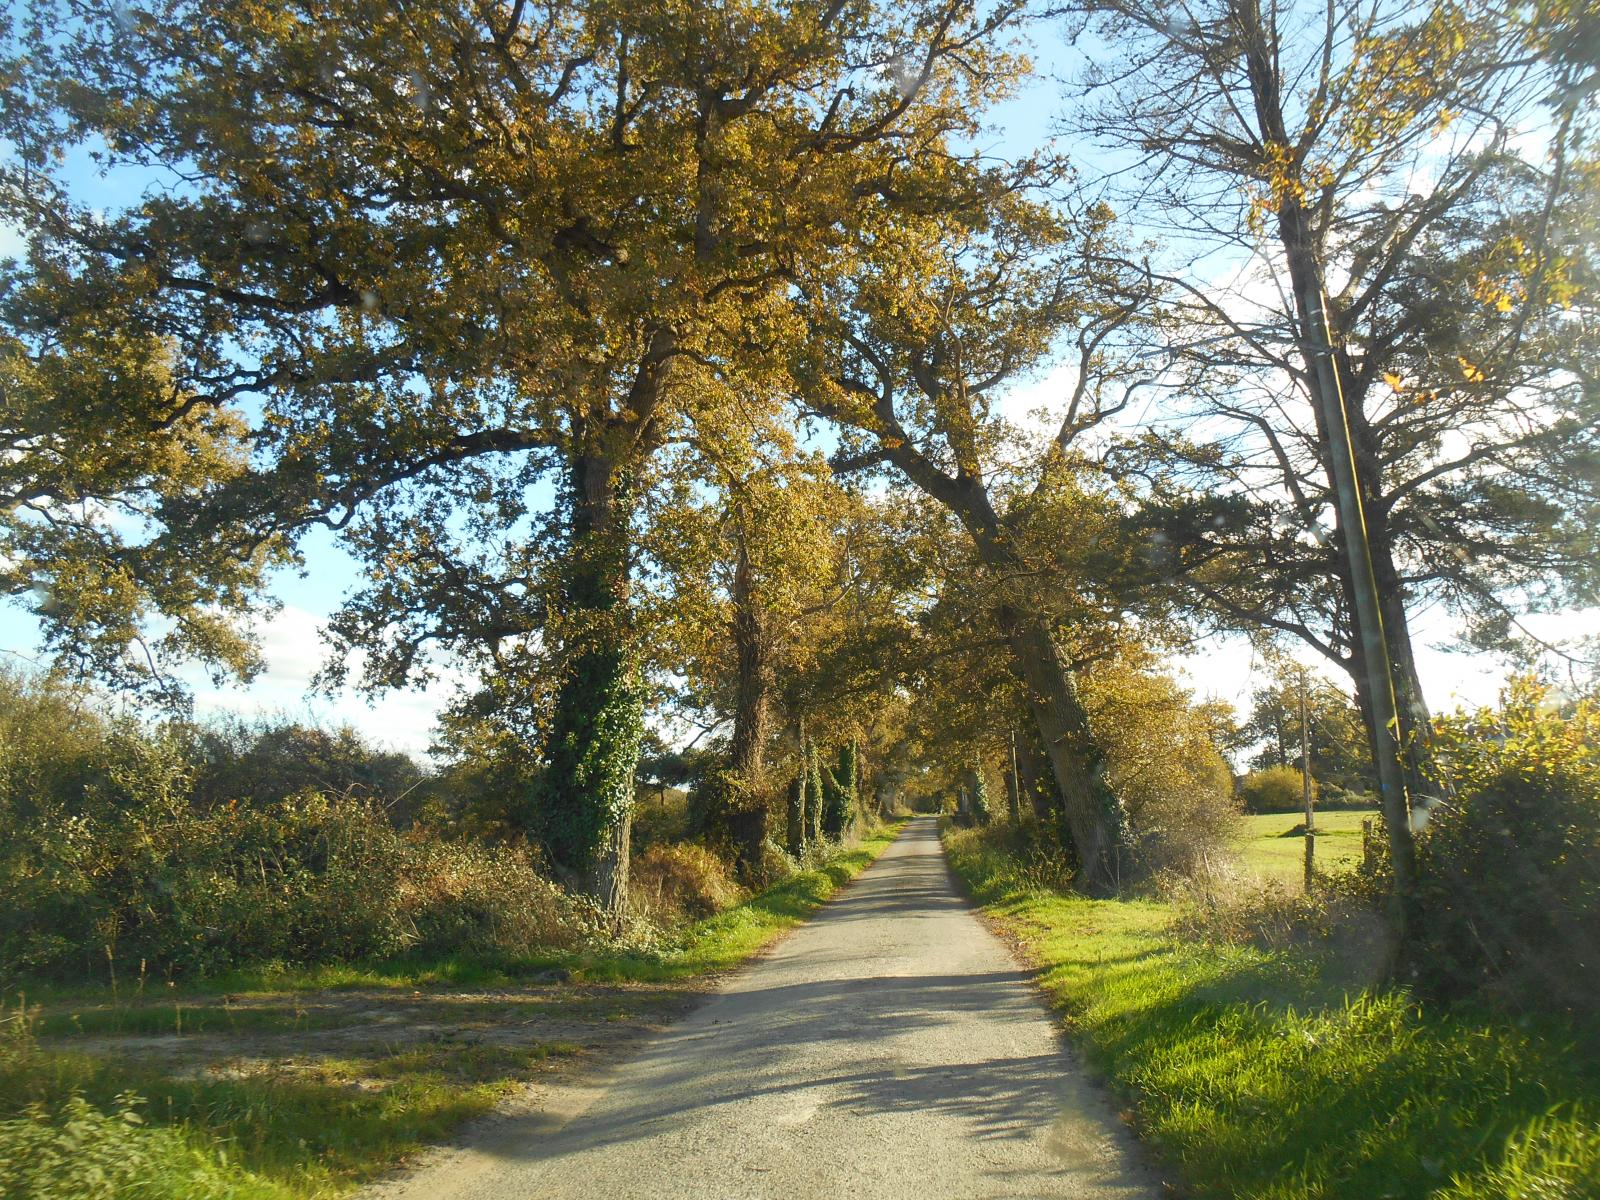 La route entourée d'une forêt d'automne (Les Moutiers en Retz)